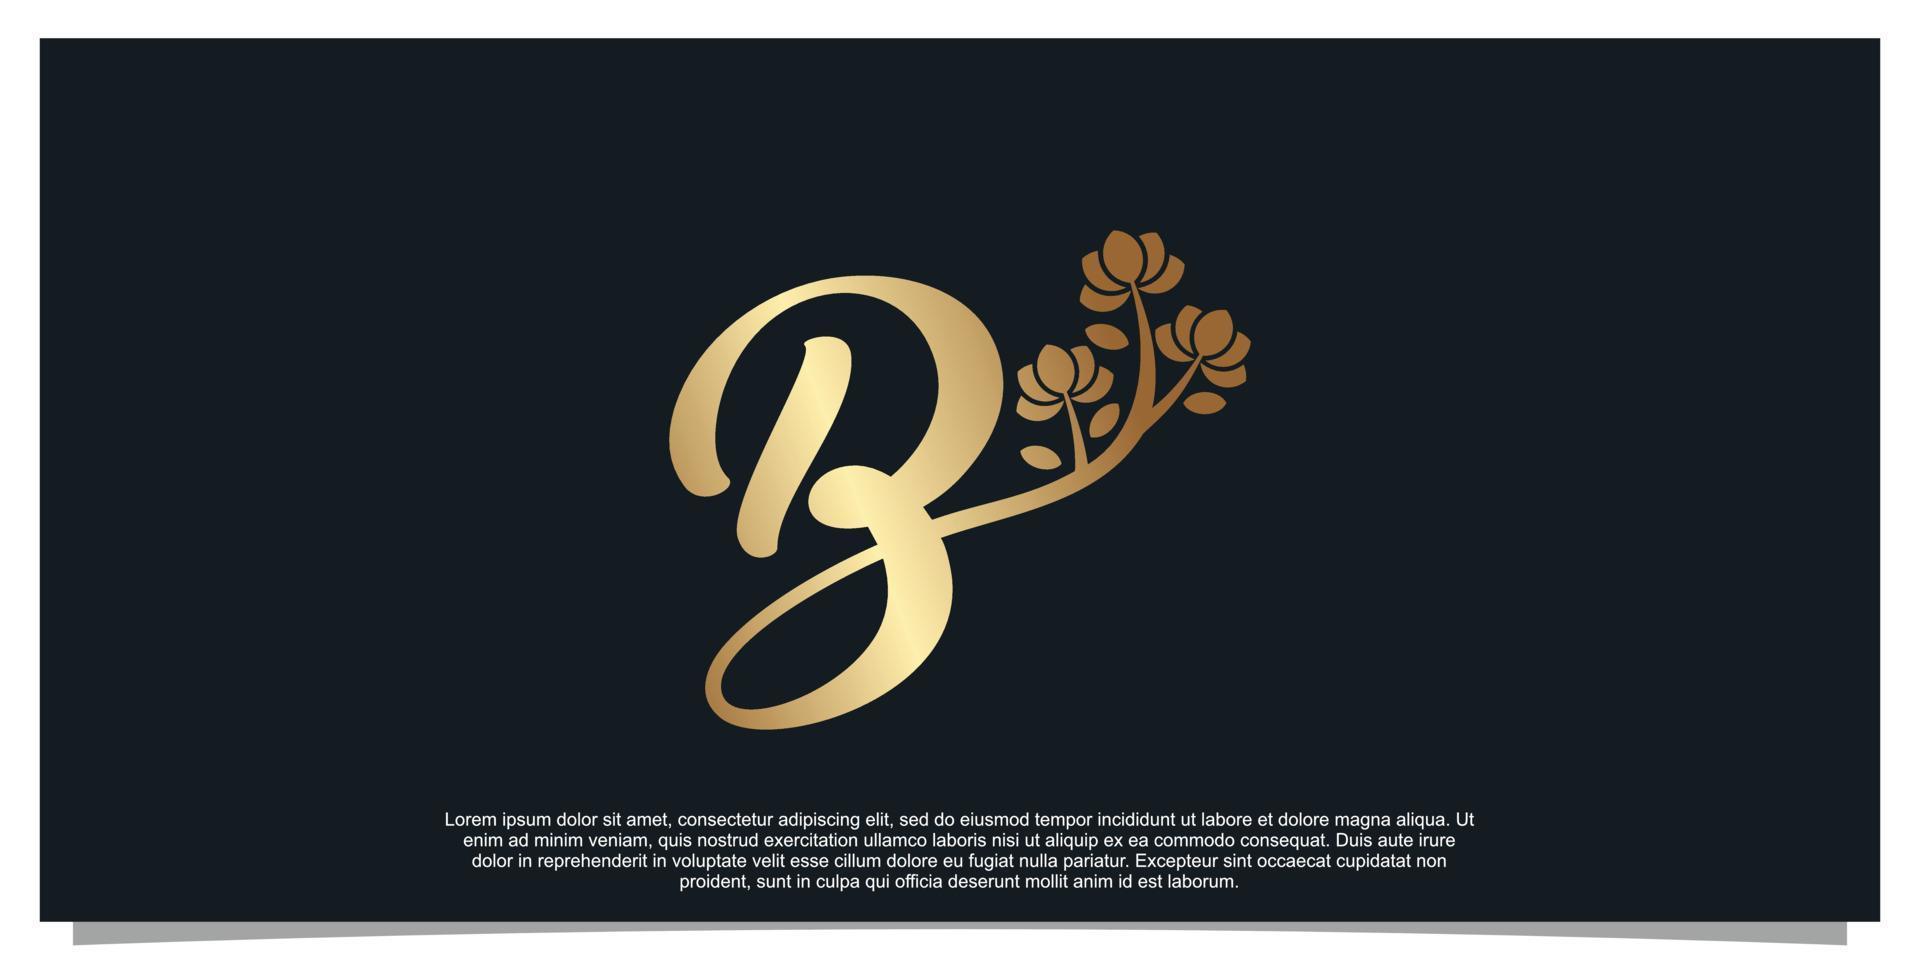 Logo design letter B with flower unique concept Premium Vector